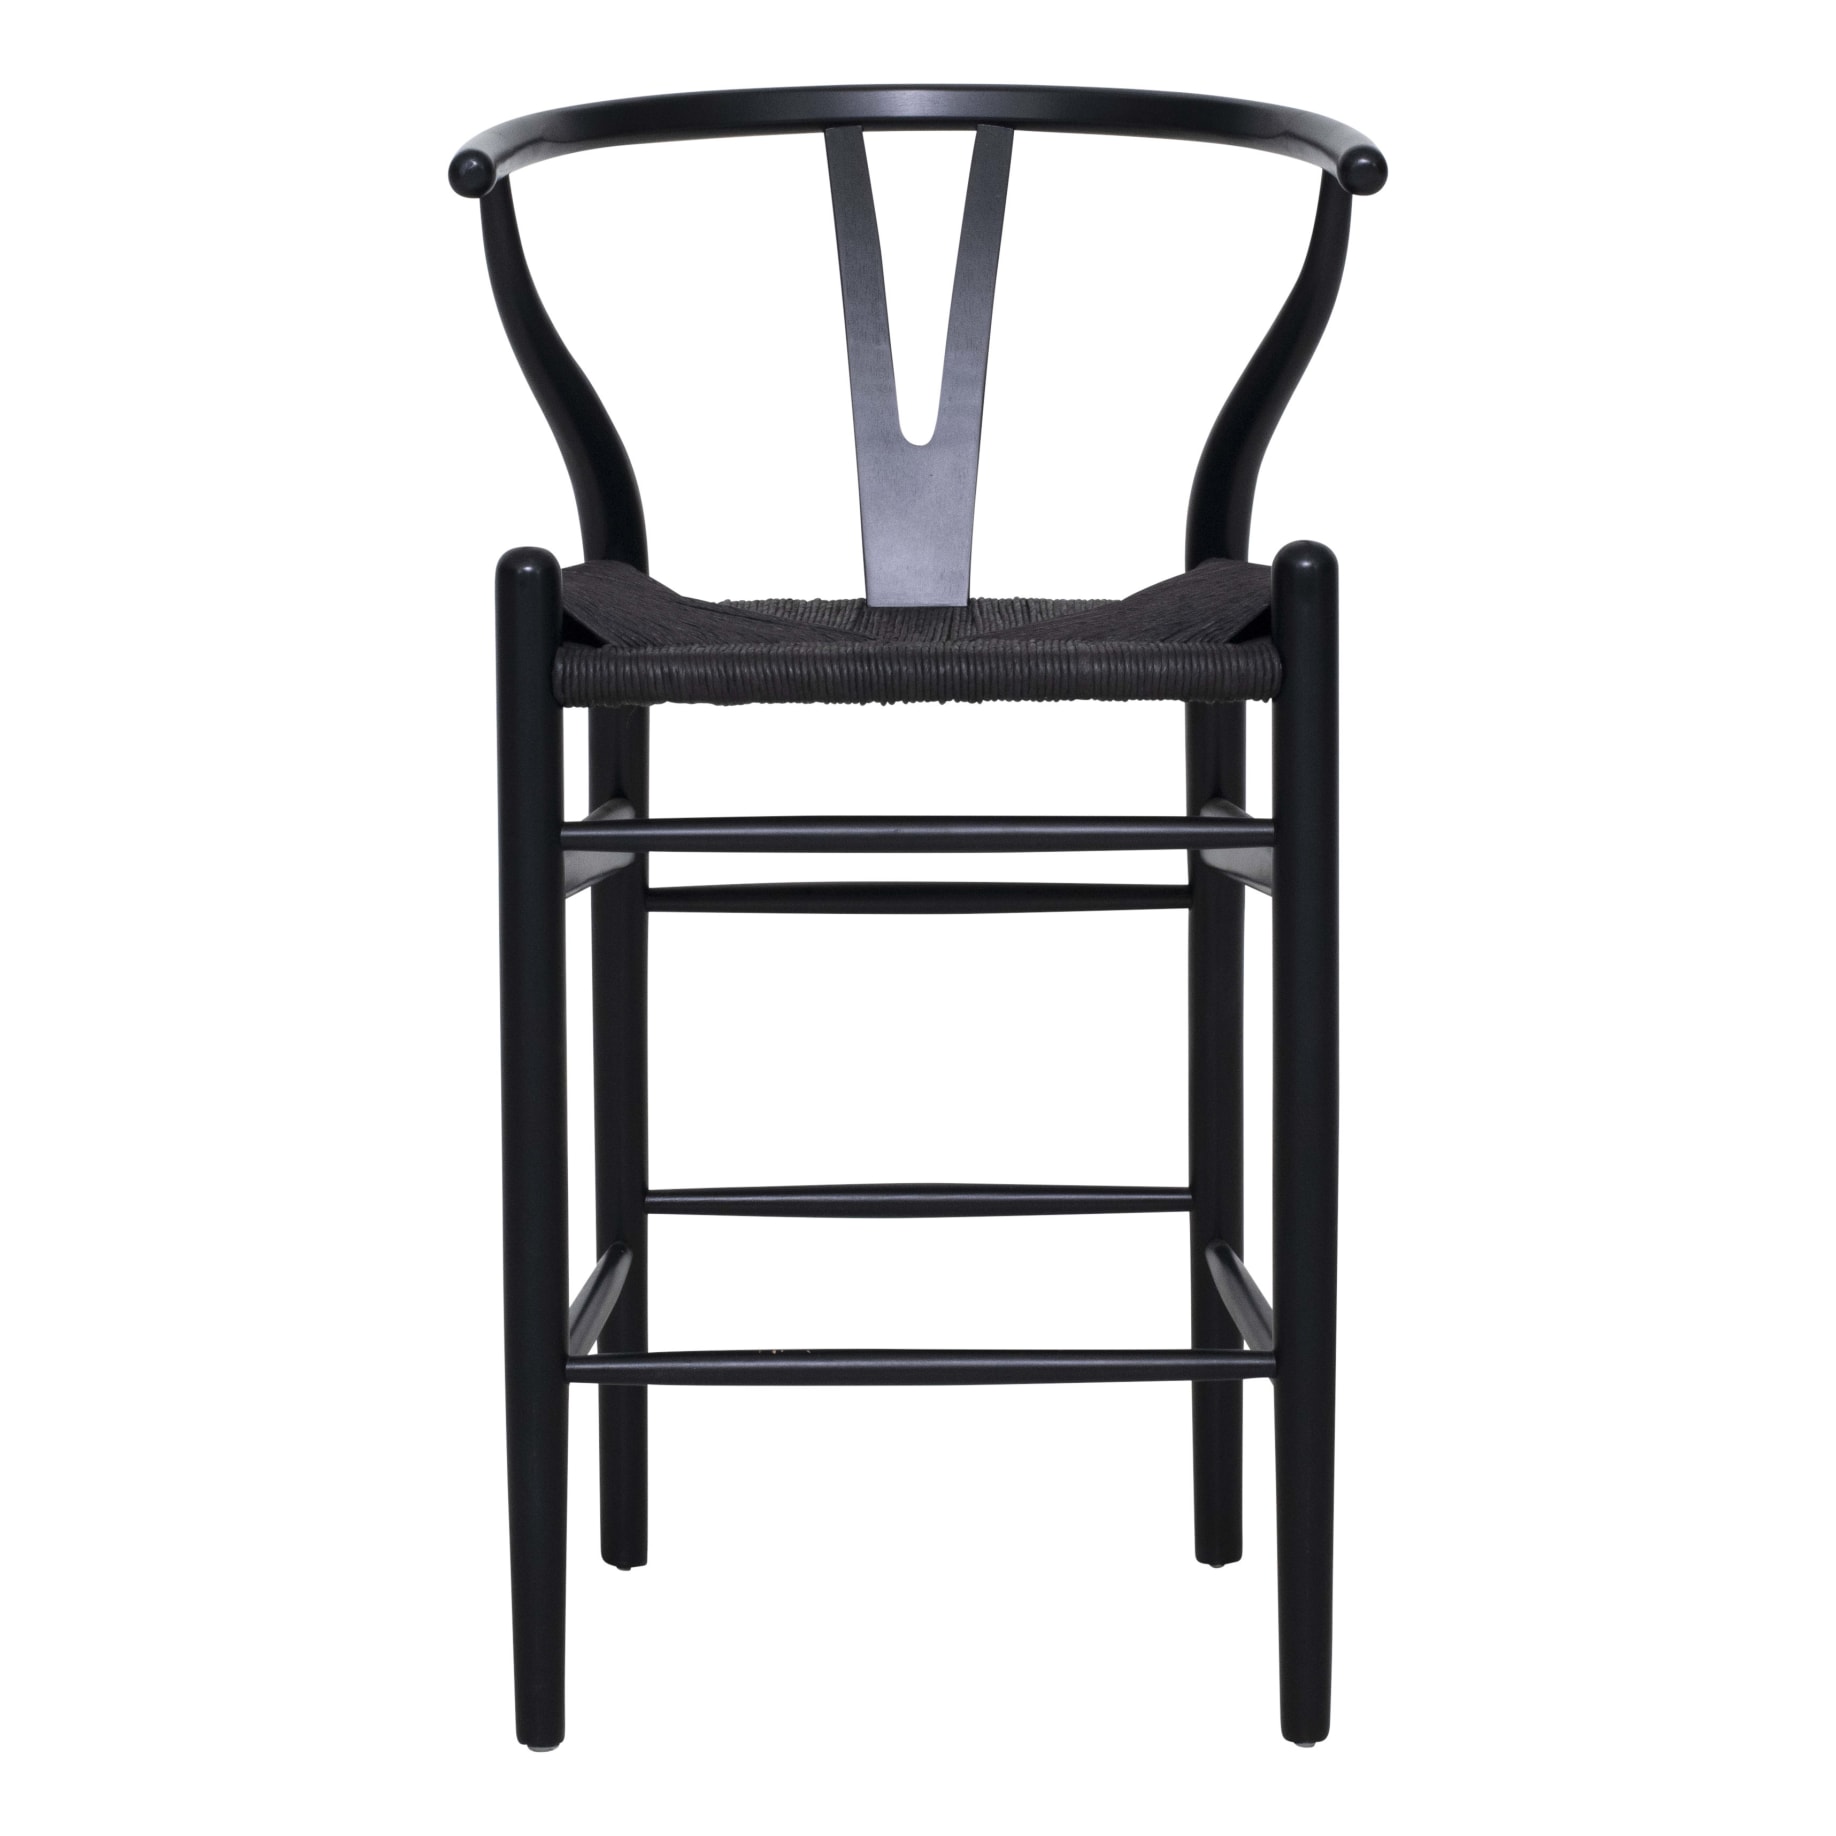 Megs Bar Chair in Black